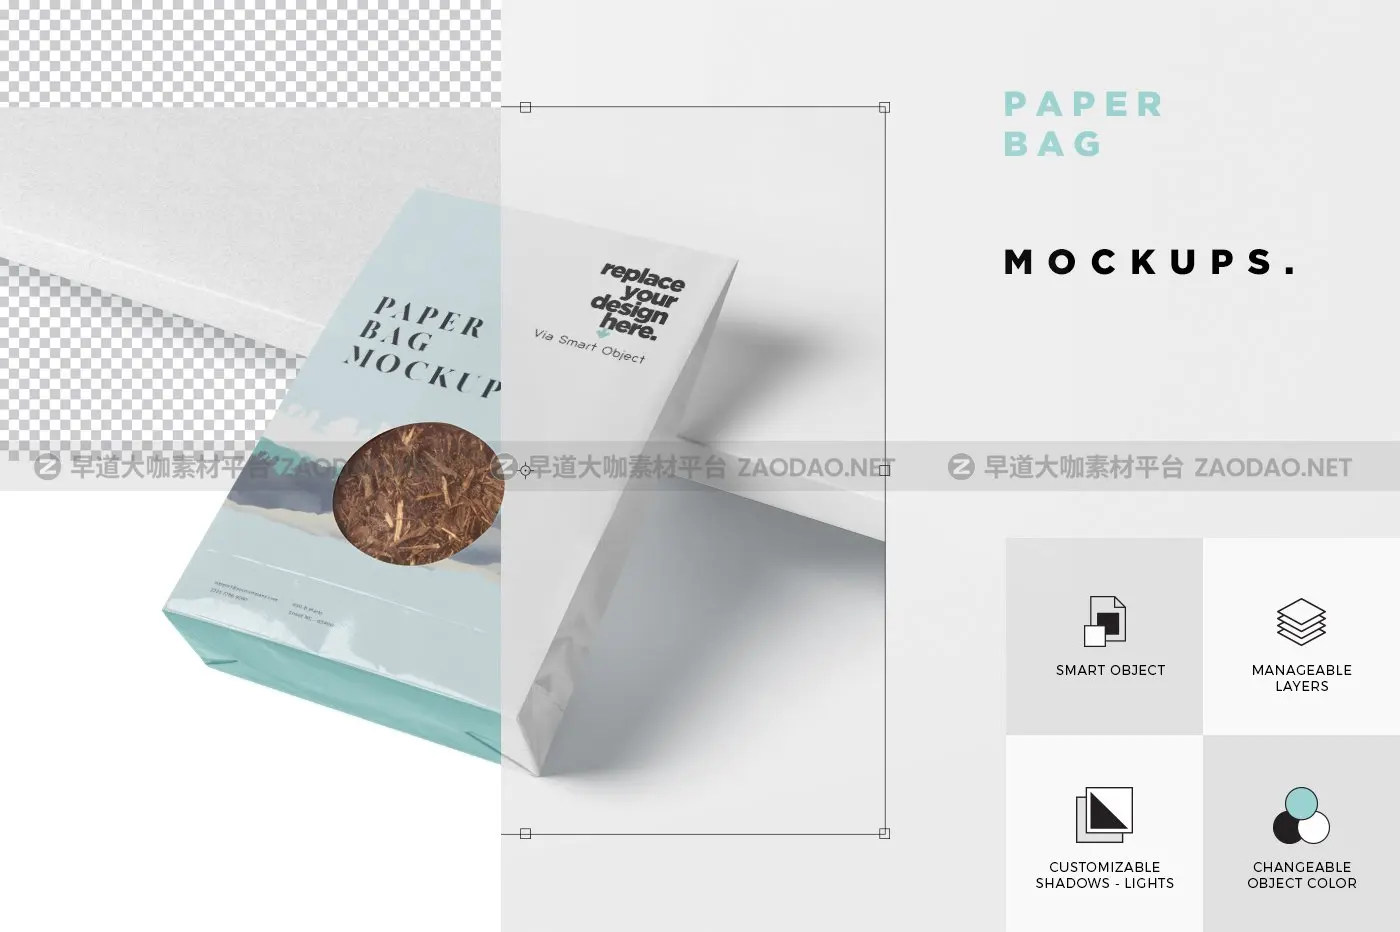 咖啡茶叶纸袋设计PSD样机模板 Paper Bag Mockup插图4